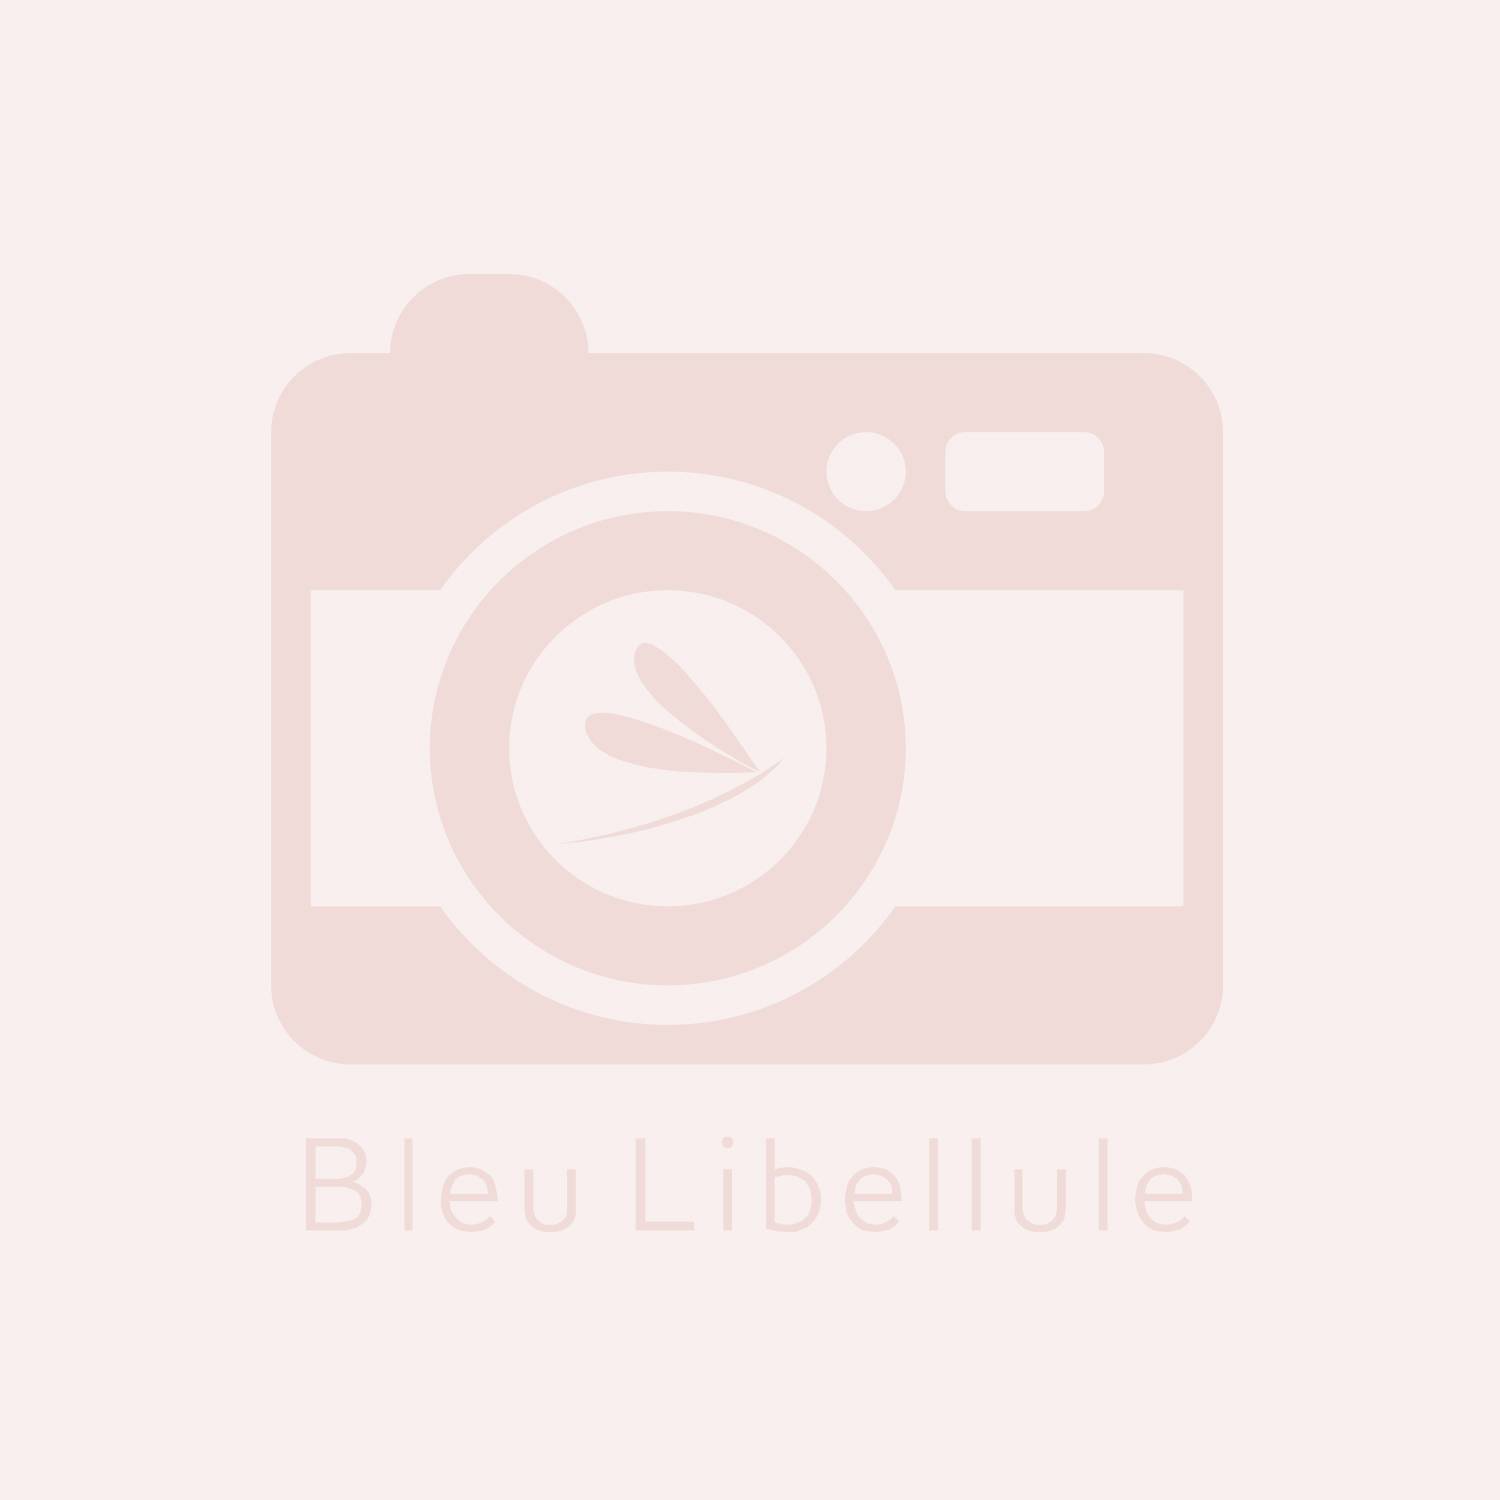 Bleu Libellule Médaillon argent, Carnet et fourniture